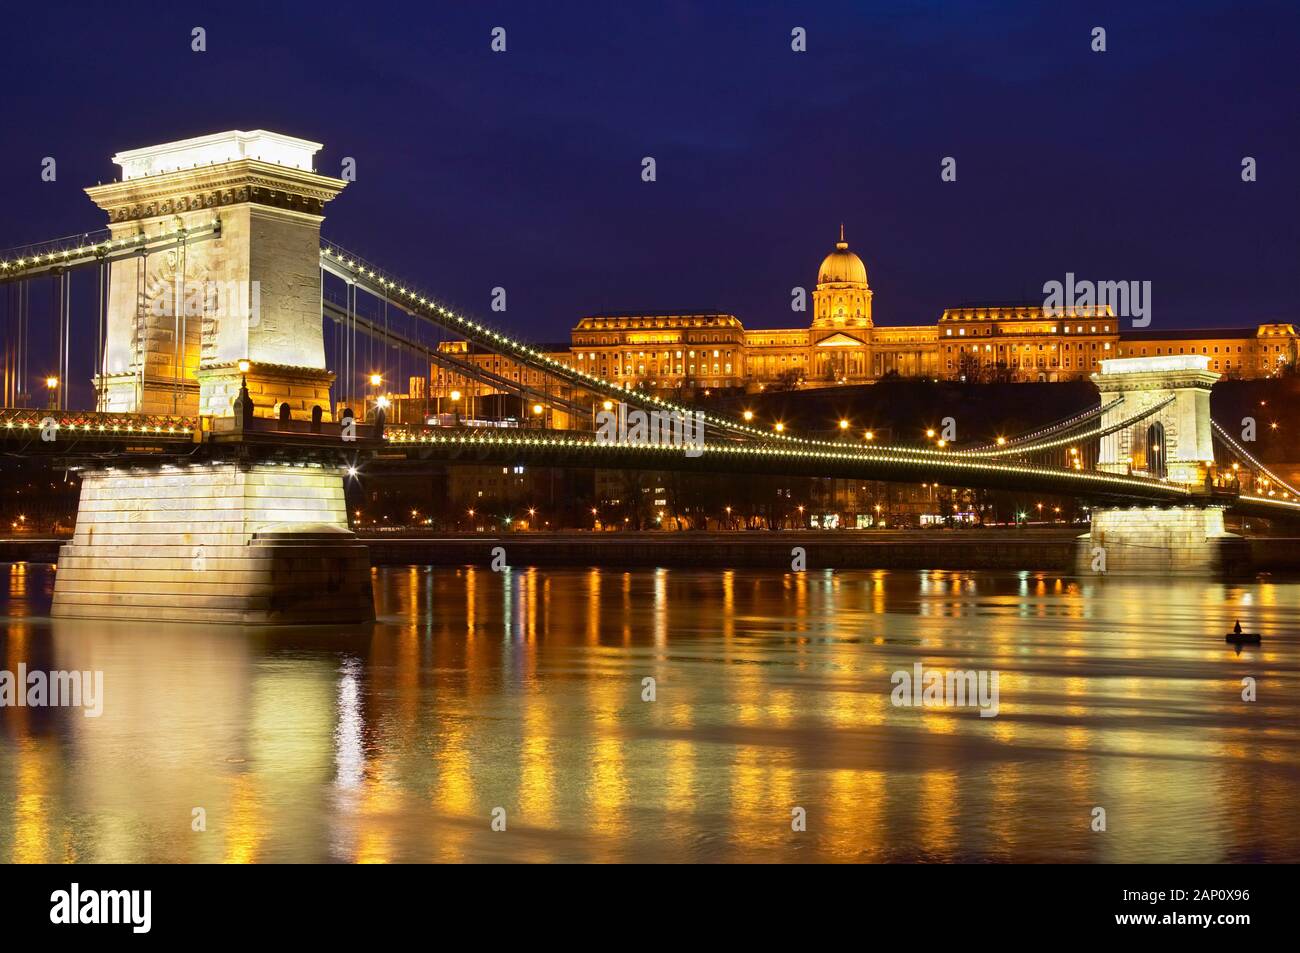 Chain Bridge over River Danube allumé au crépuscule, Budapest, Hongrie Banque D'Images